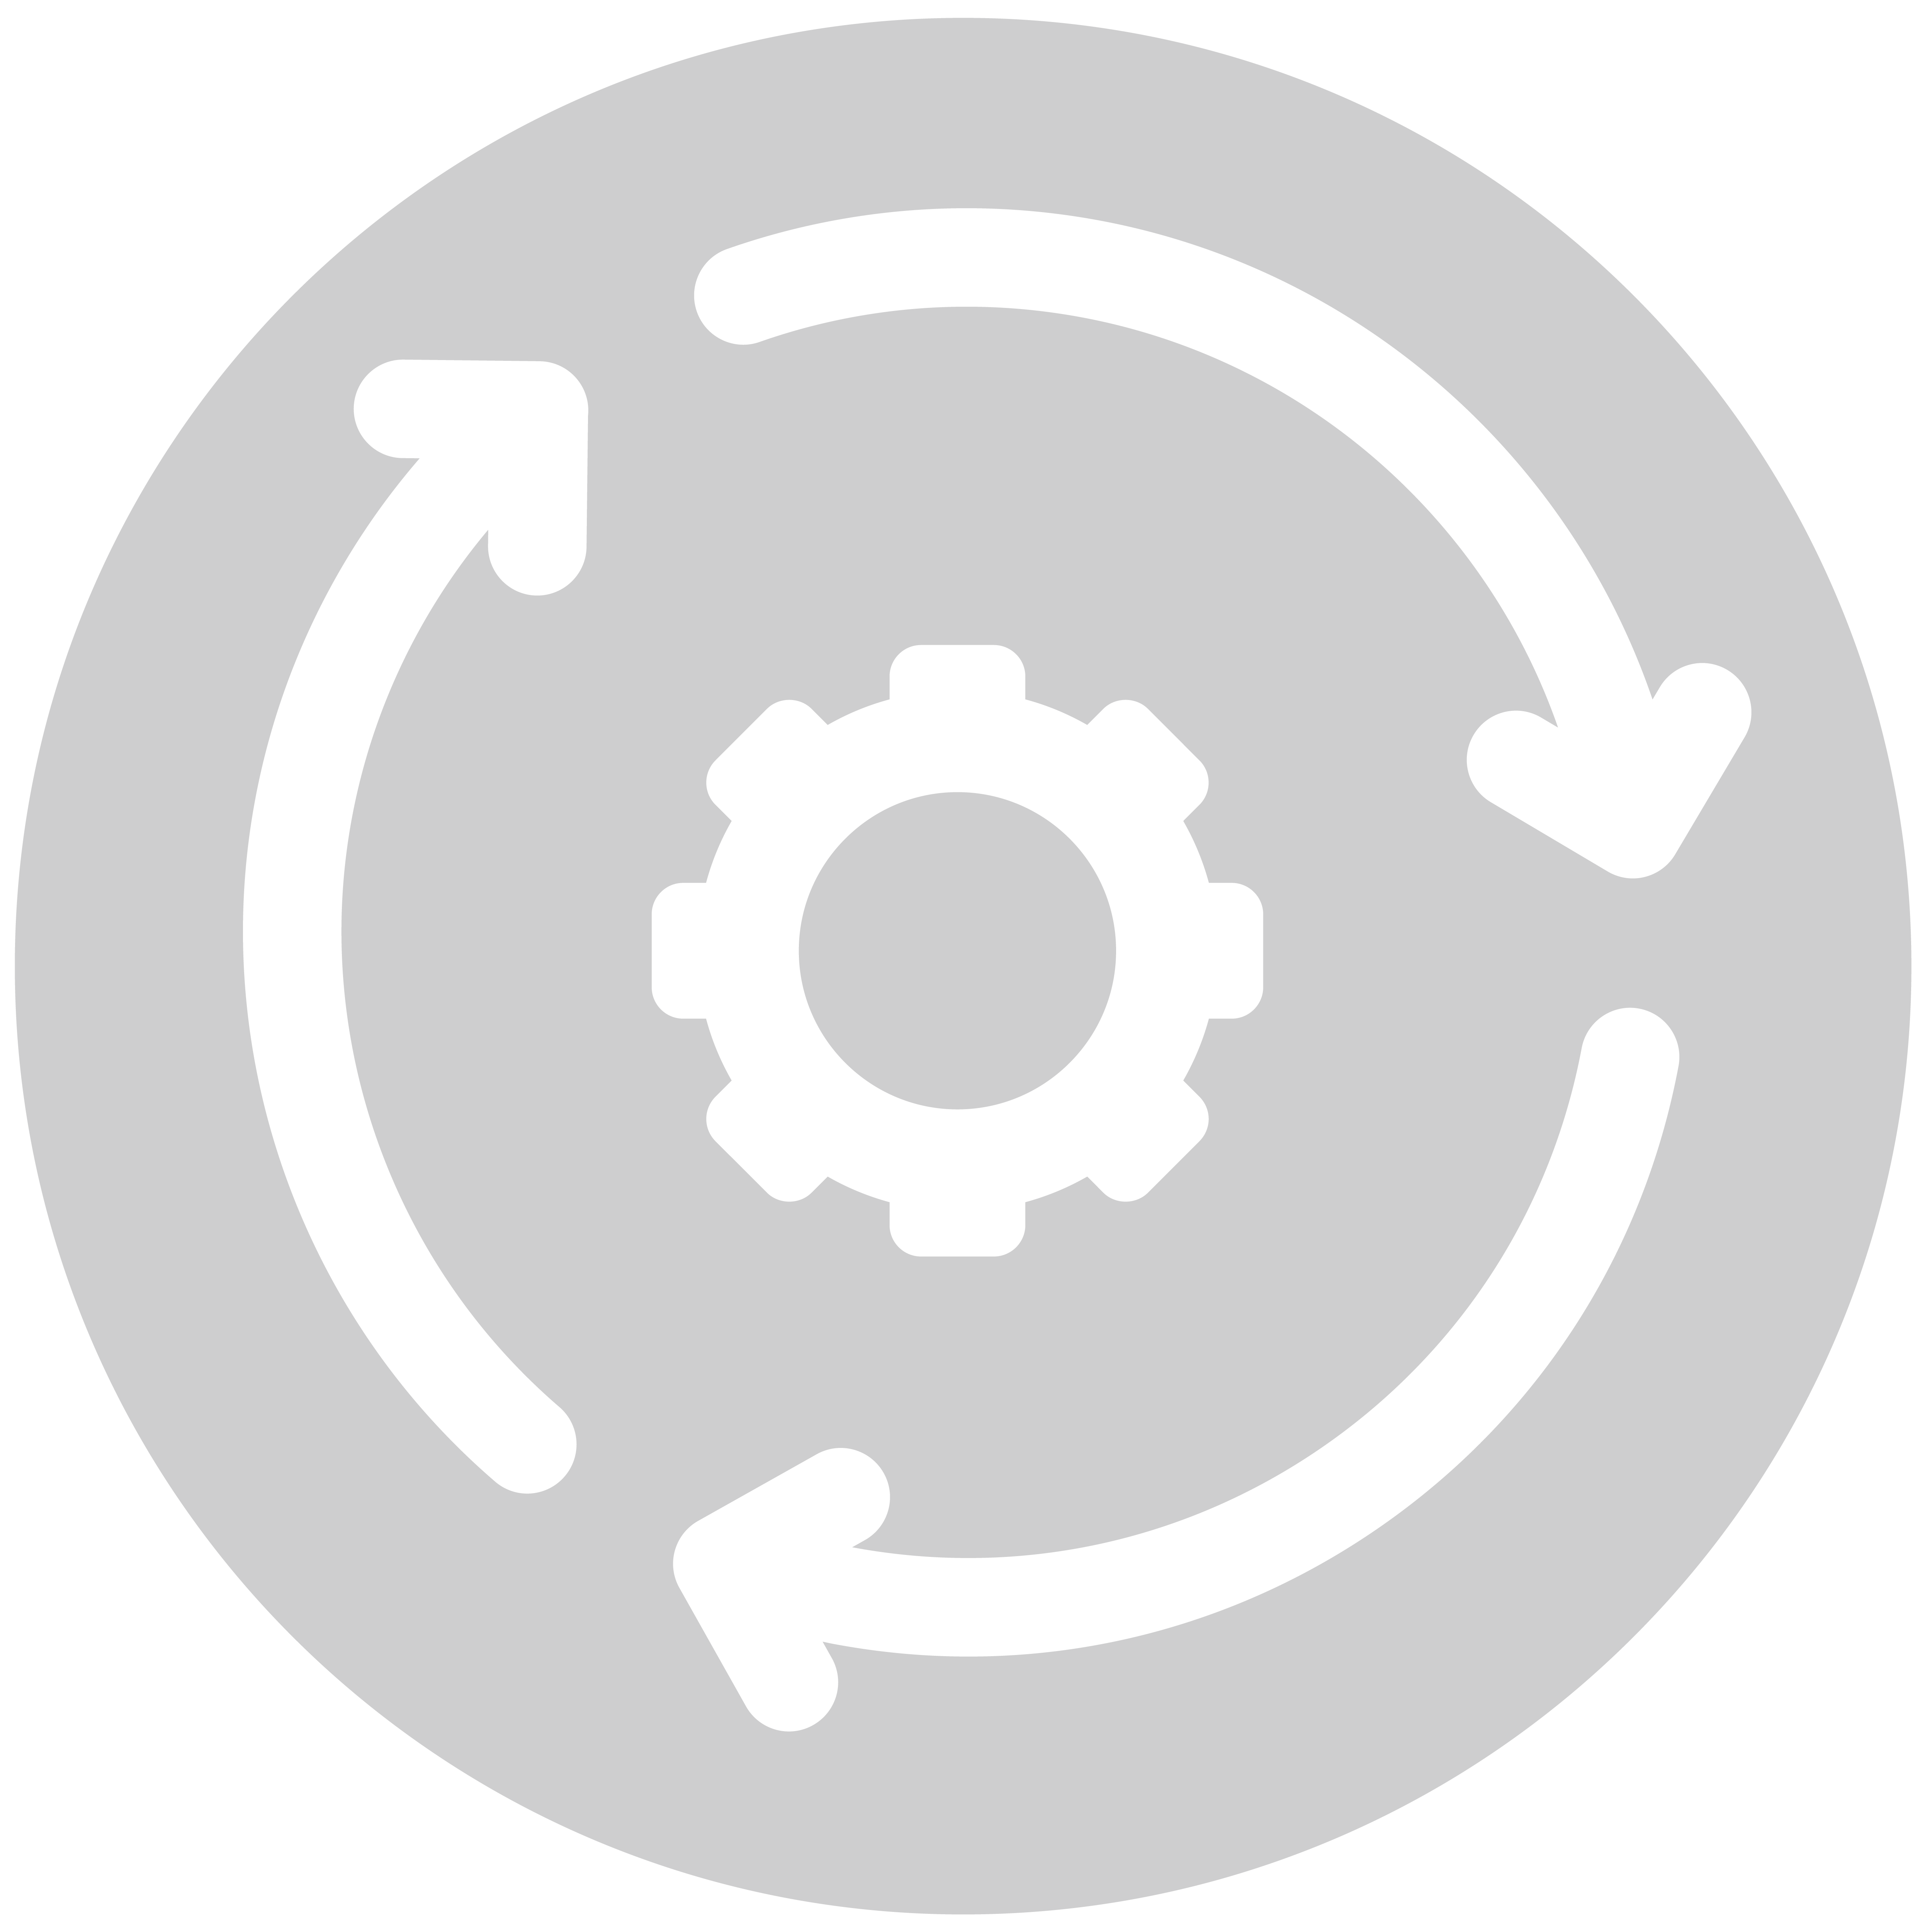 ícone da área de Devops and Automation representa os processos de Devops e automação